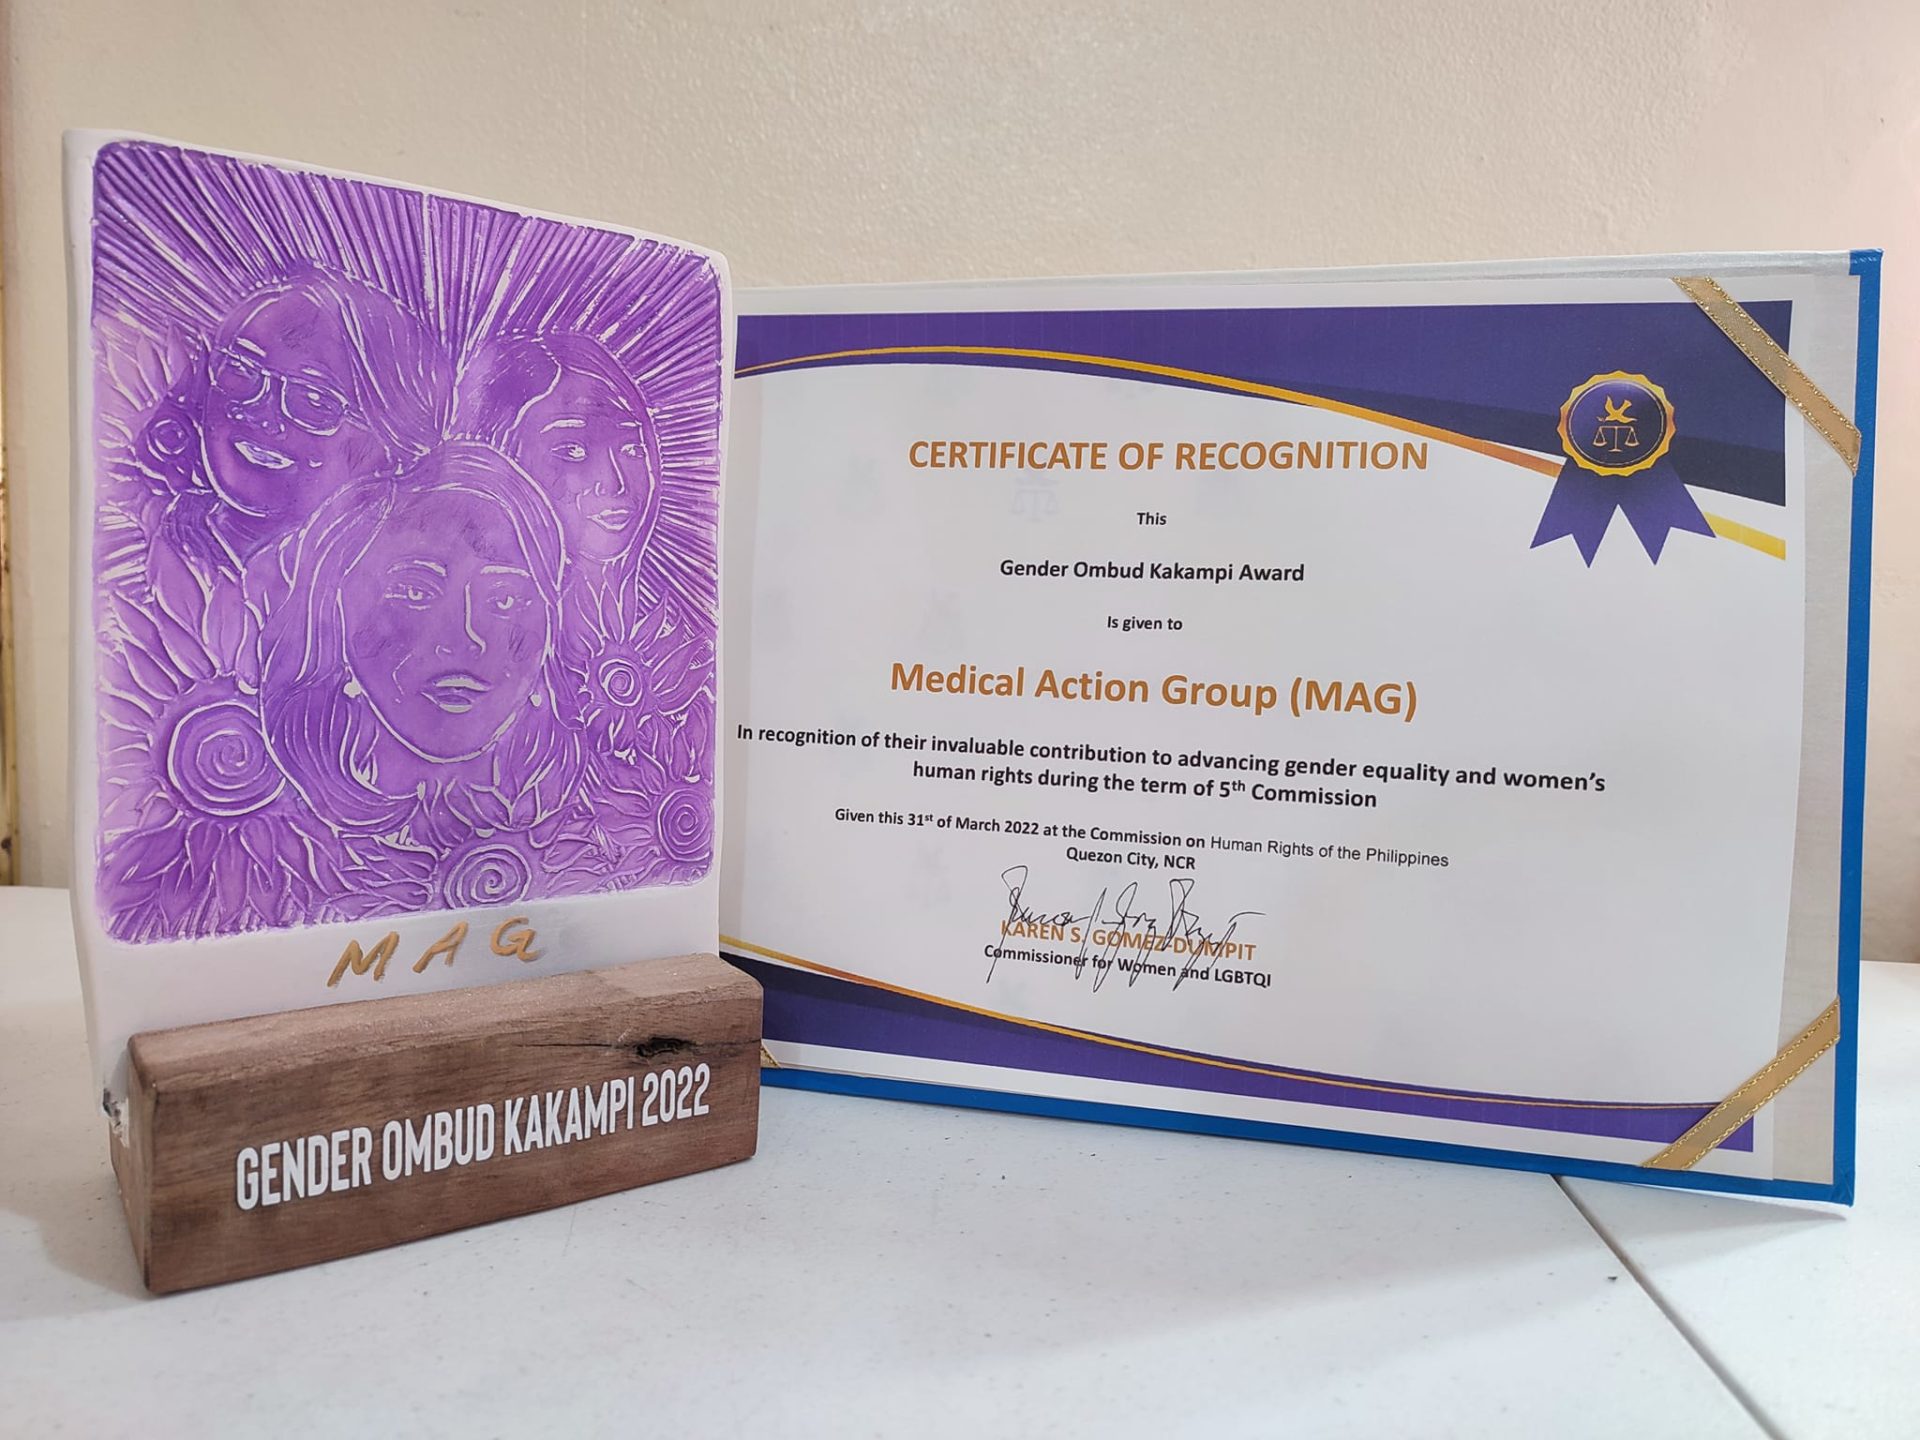 MAG receives the Gender Ombud Kakampi Award